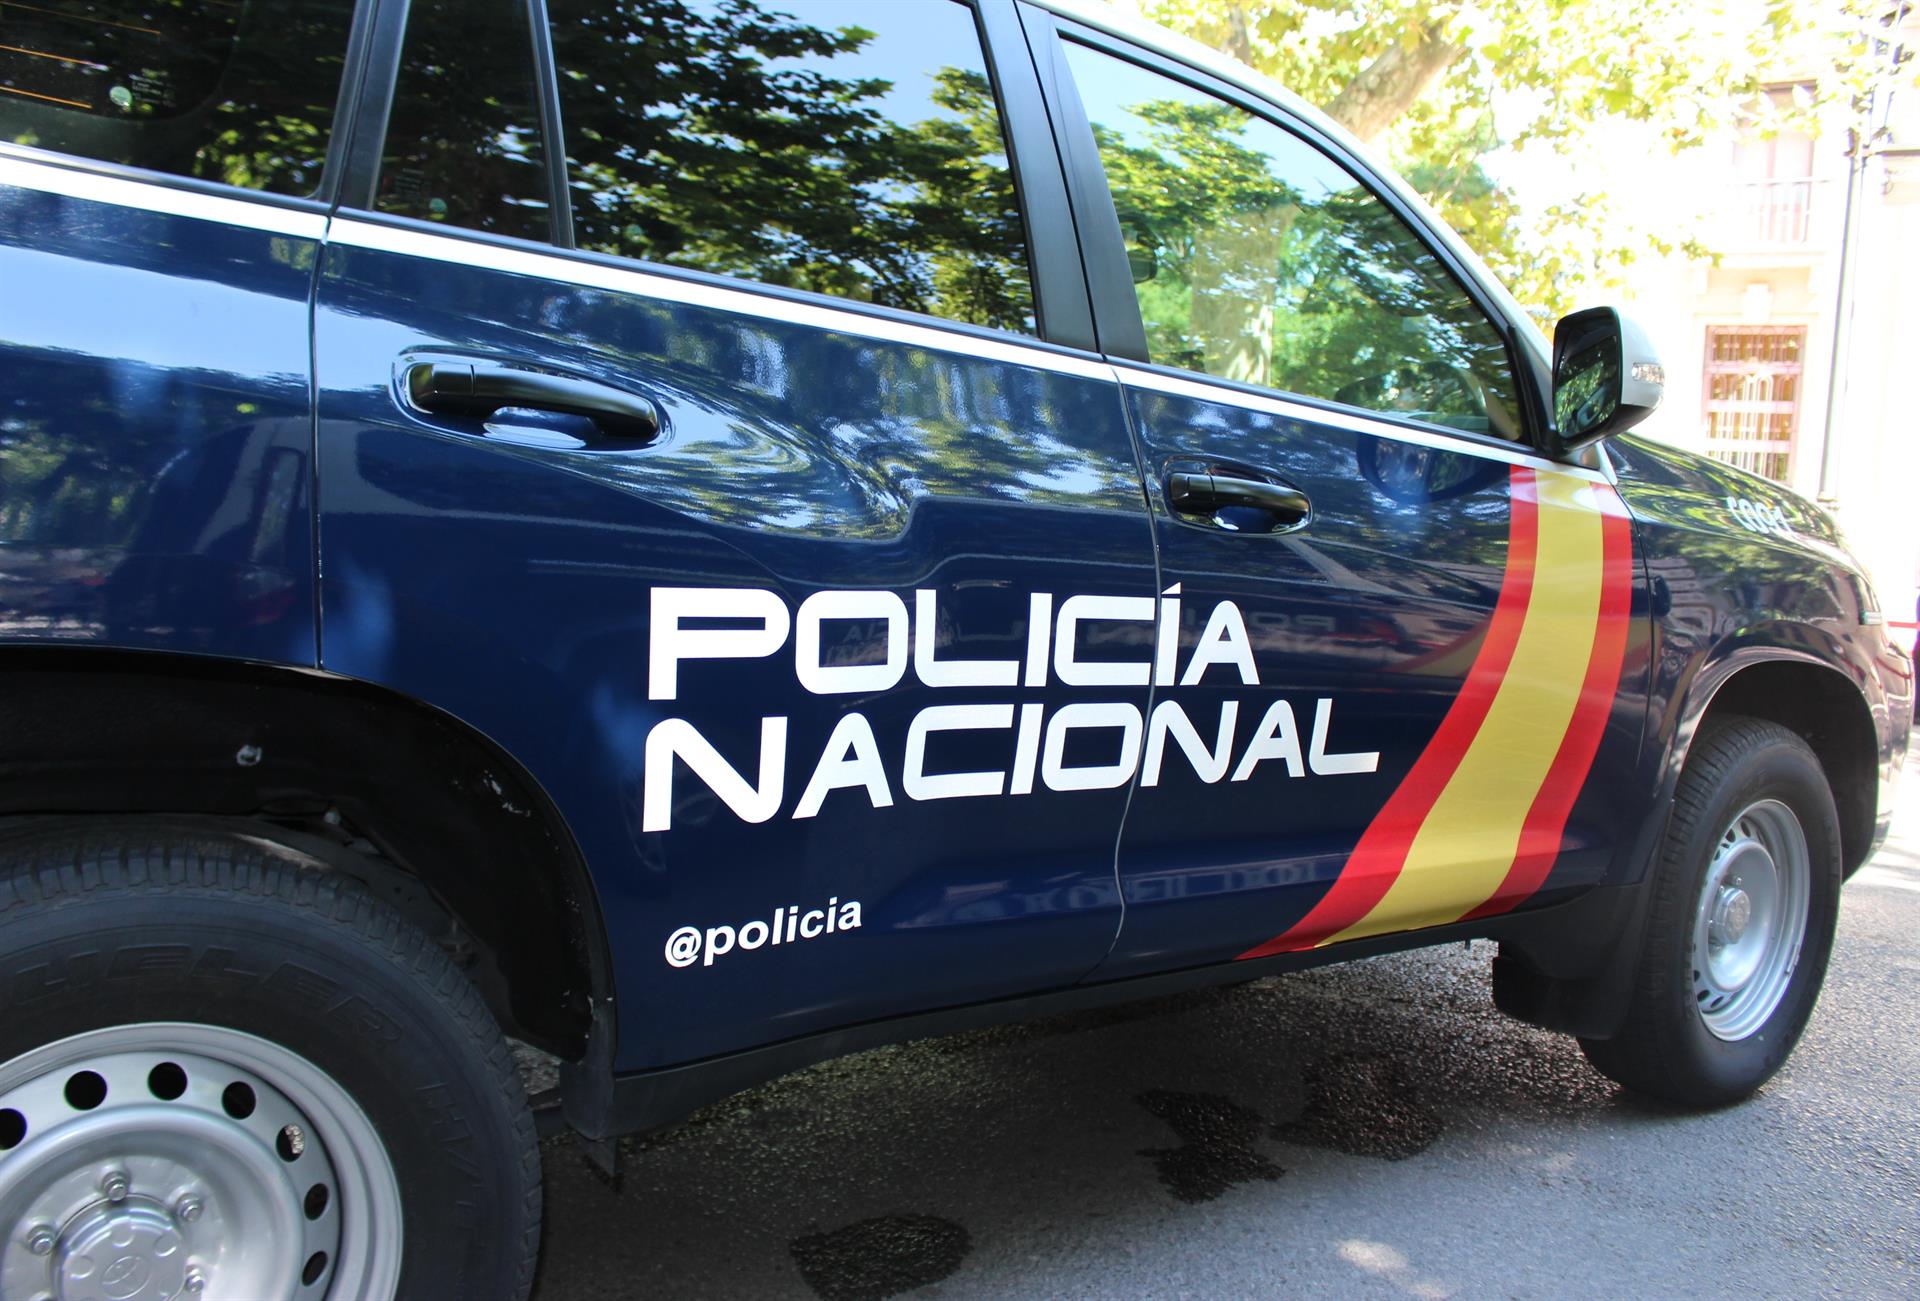 Imagen de una patrulla, facilitada por la Policía Nacional.